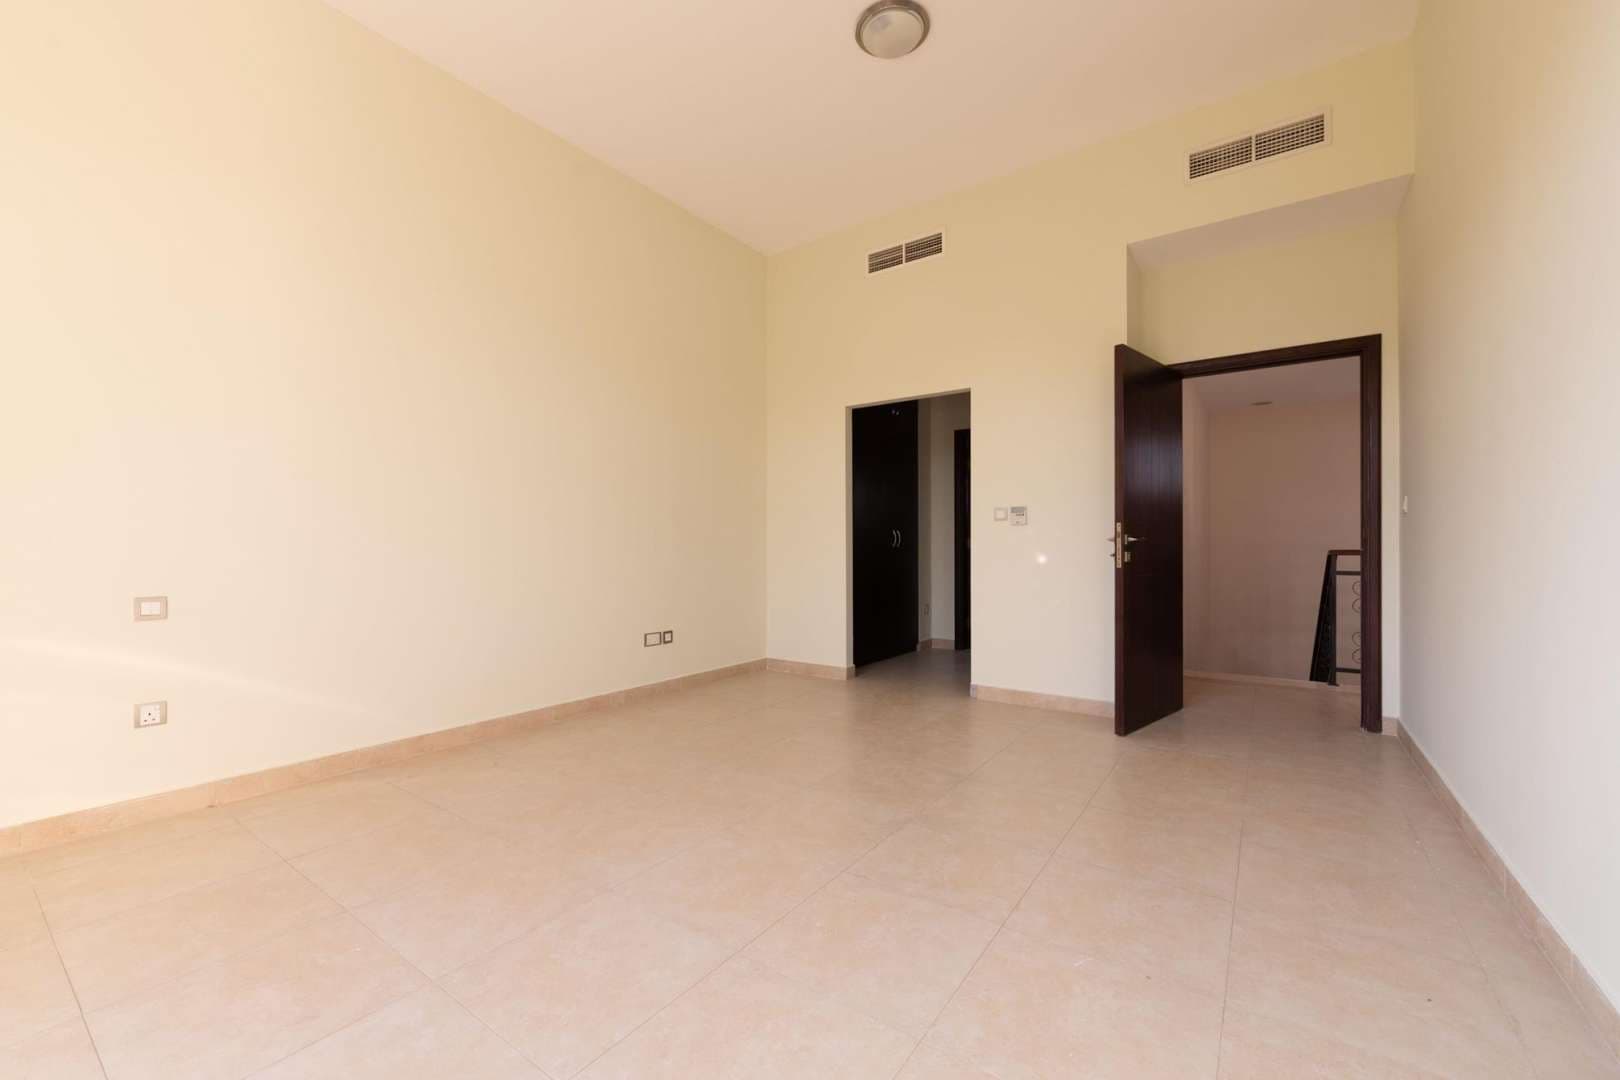 4 Bedroom Townhouse For Rent Al Salam Lp05116 9855d6a51452600.jpg